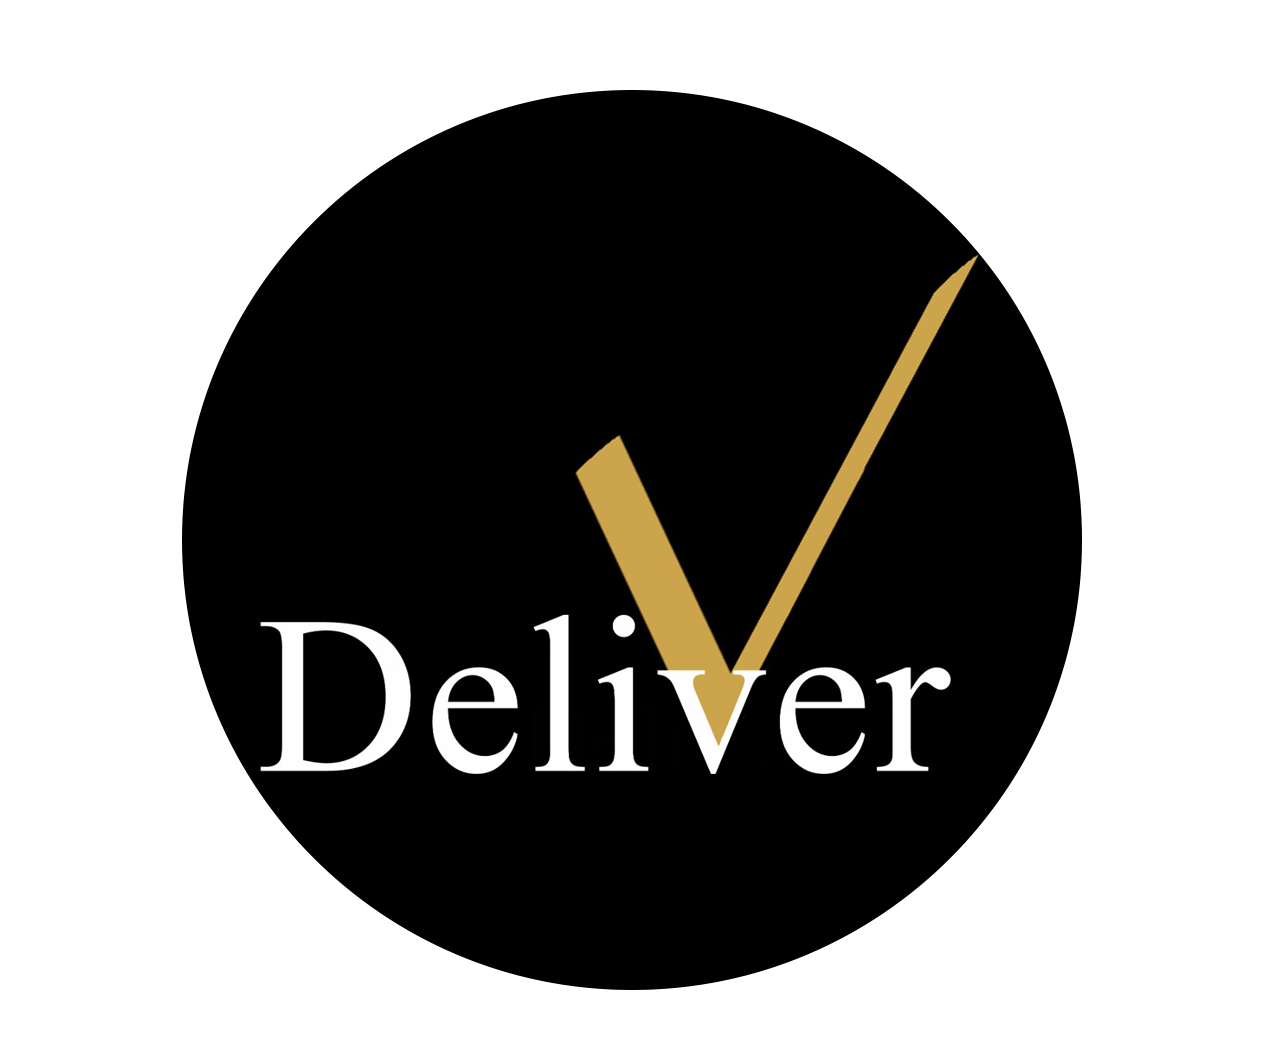 V-Delivergroup